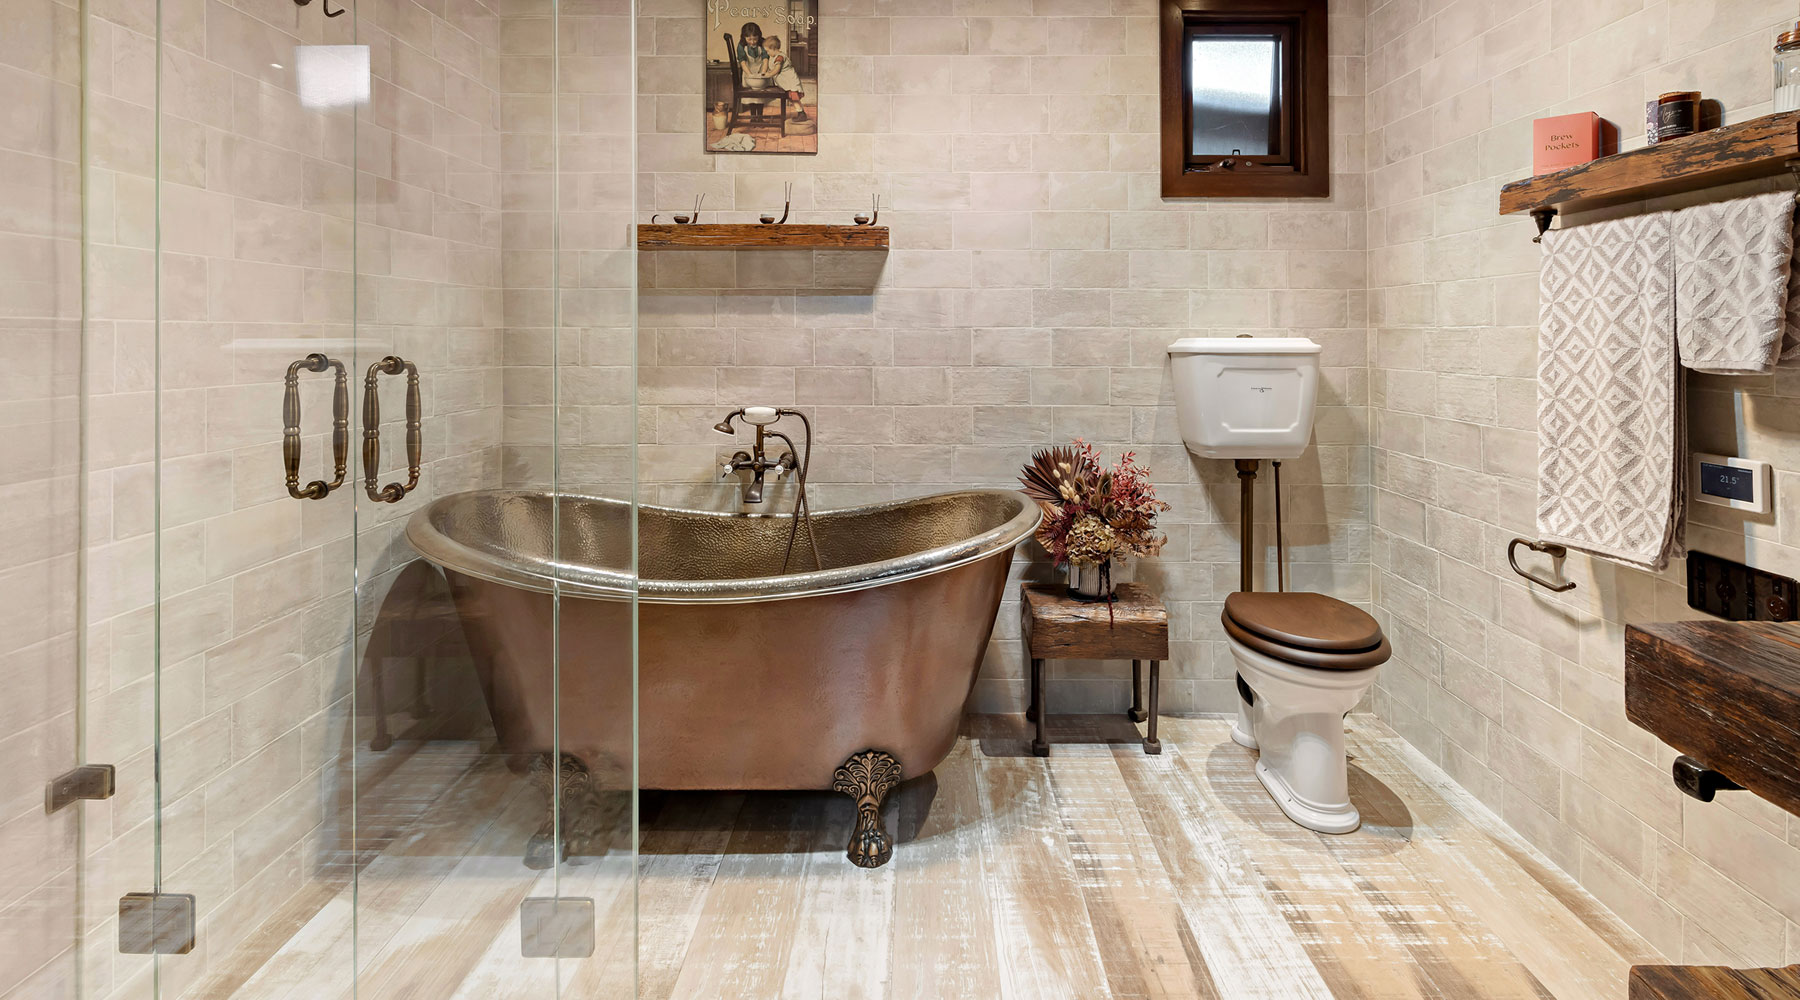 modern and stylish bathroom with a freestanding bath tub